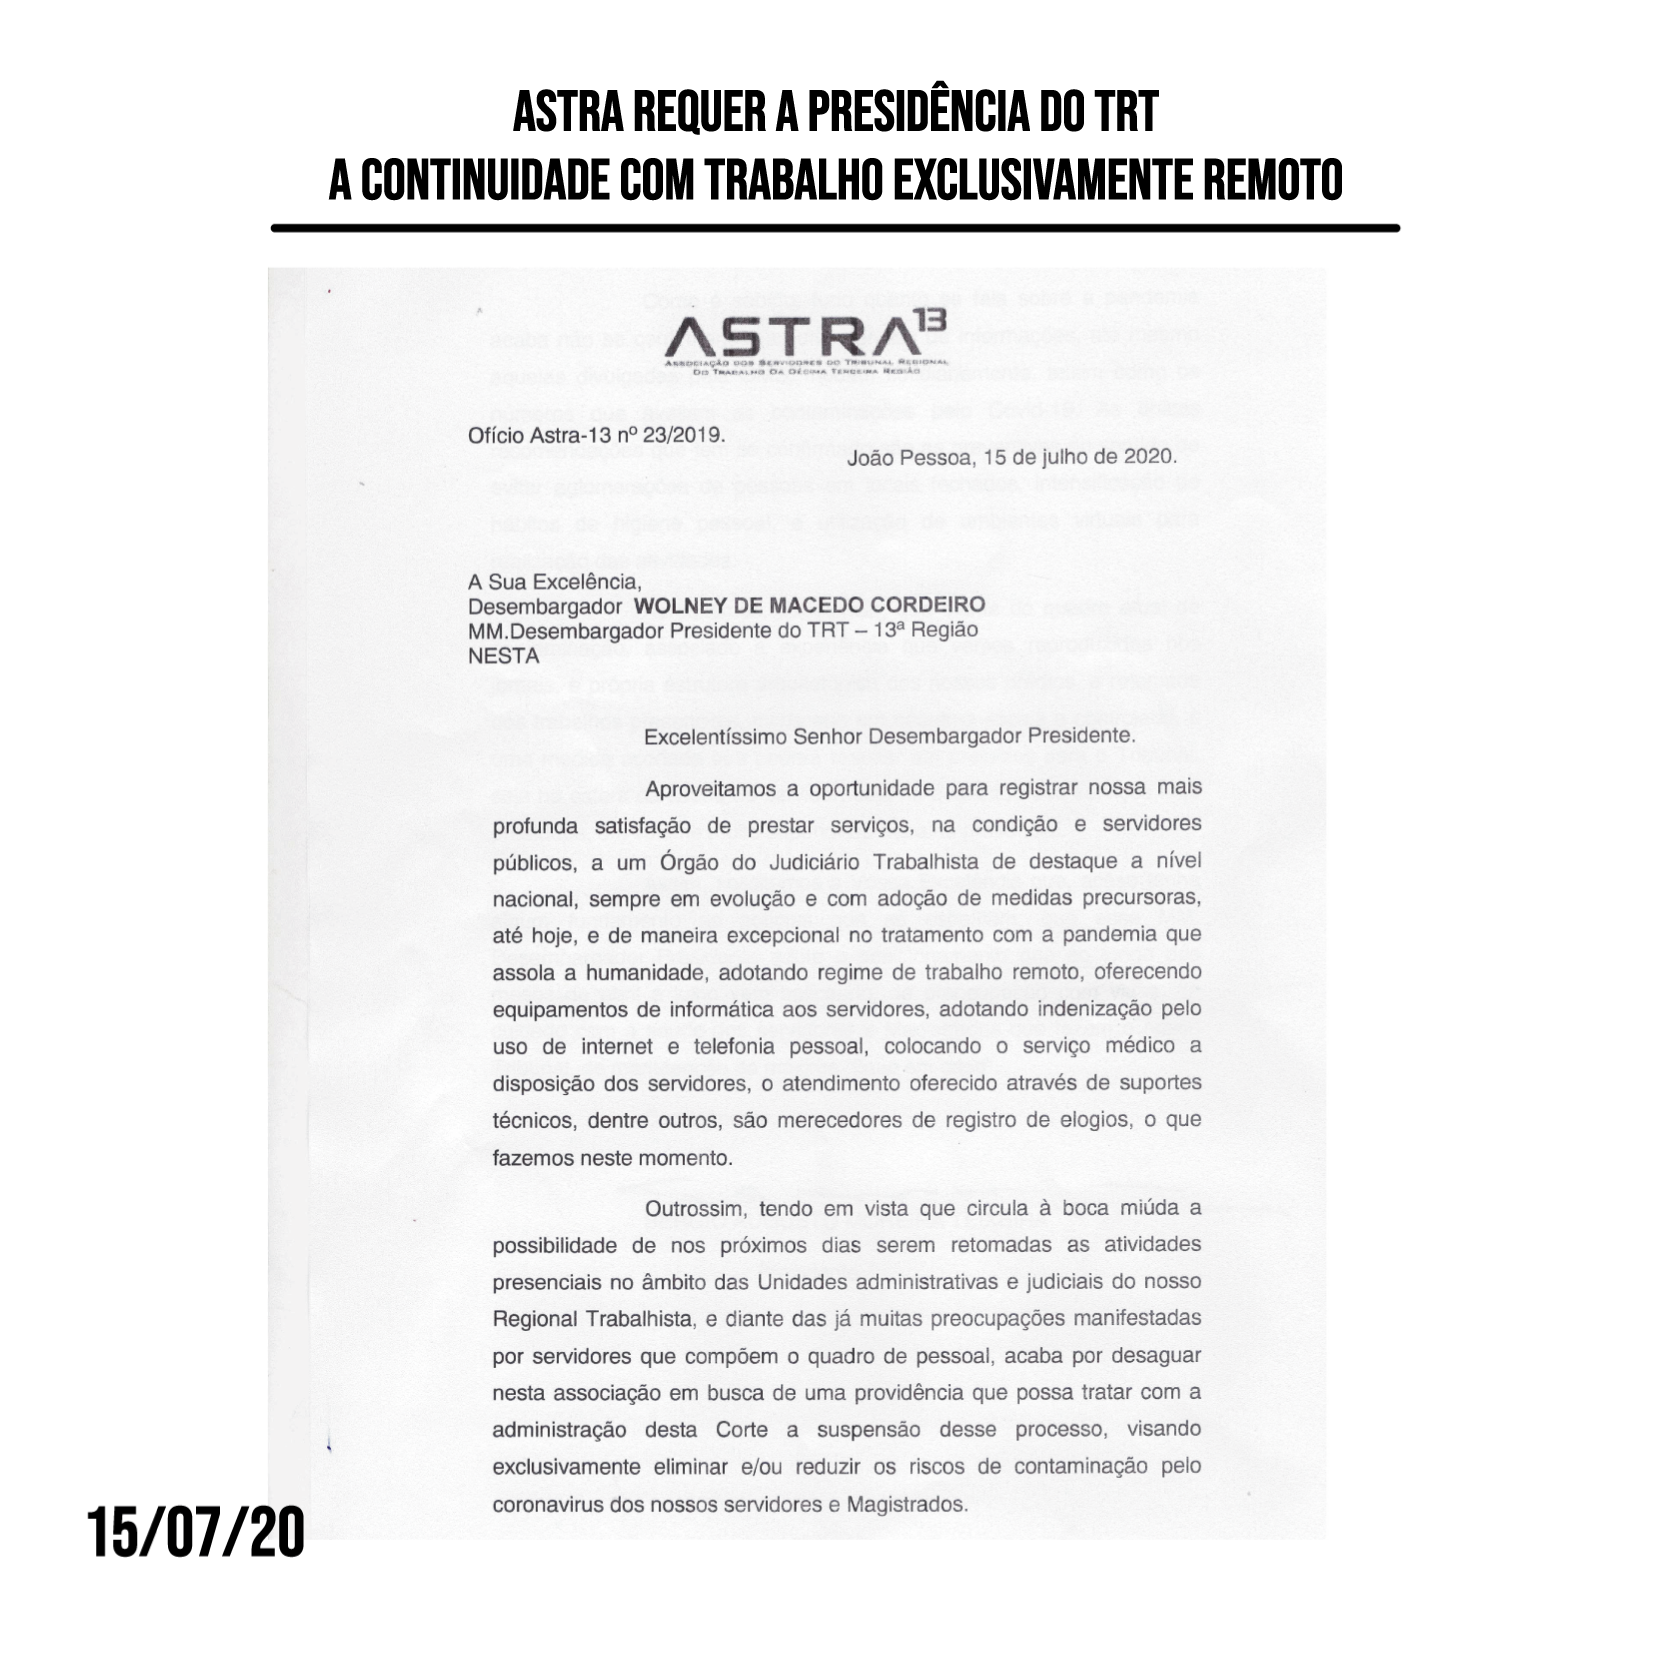 Astra requer a Presidência do TRT a continuidade com trabalho exclusivamente remoto